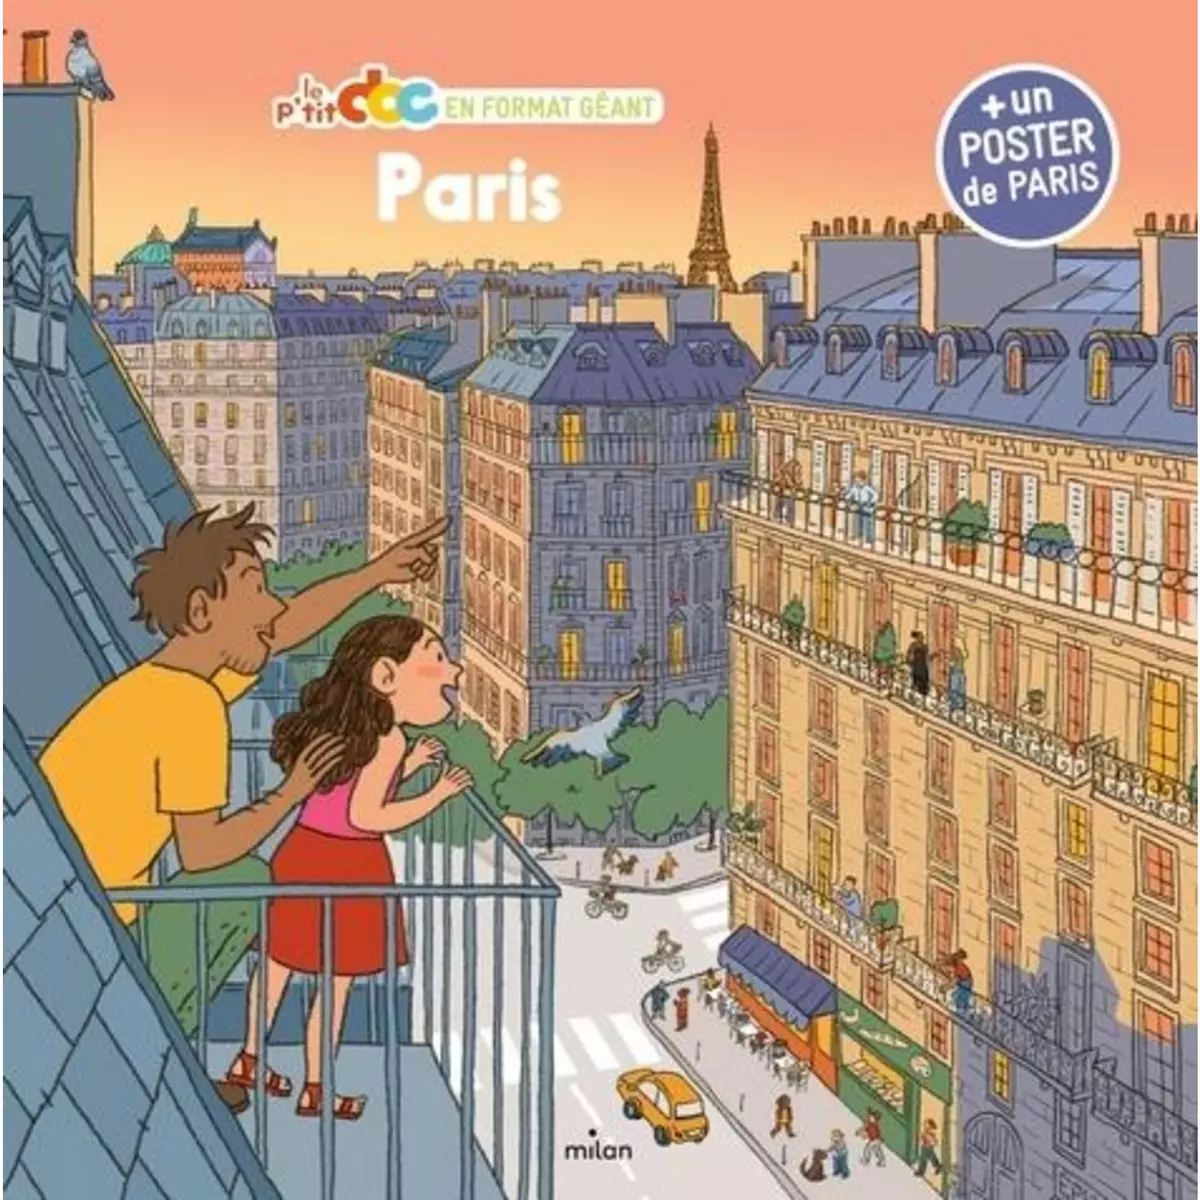  PARIS. + 1 POSTER DE PARIS, Ledu Stéphanie